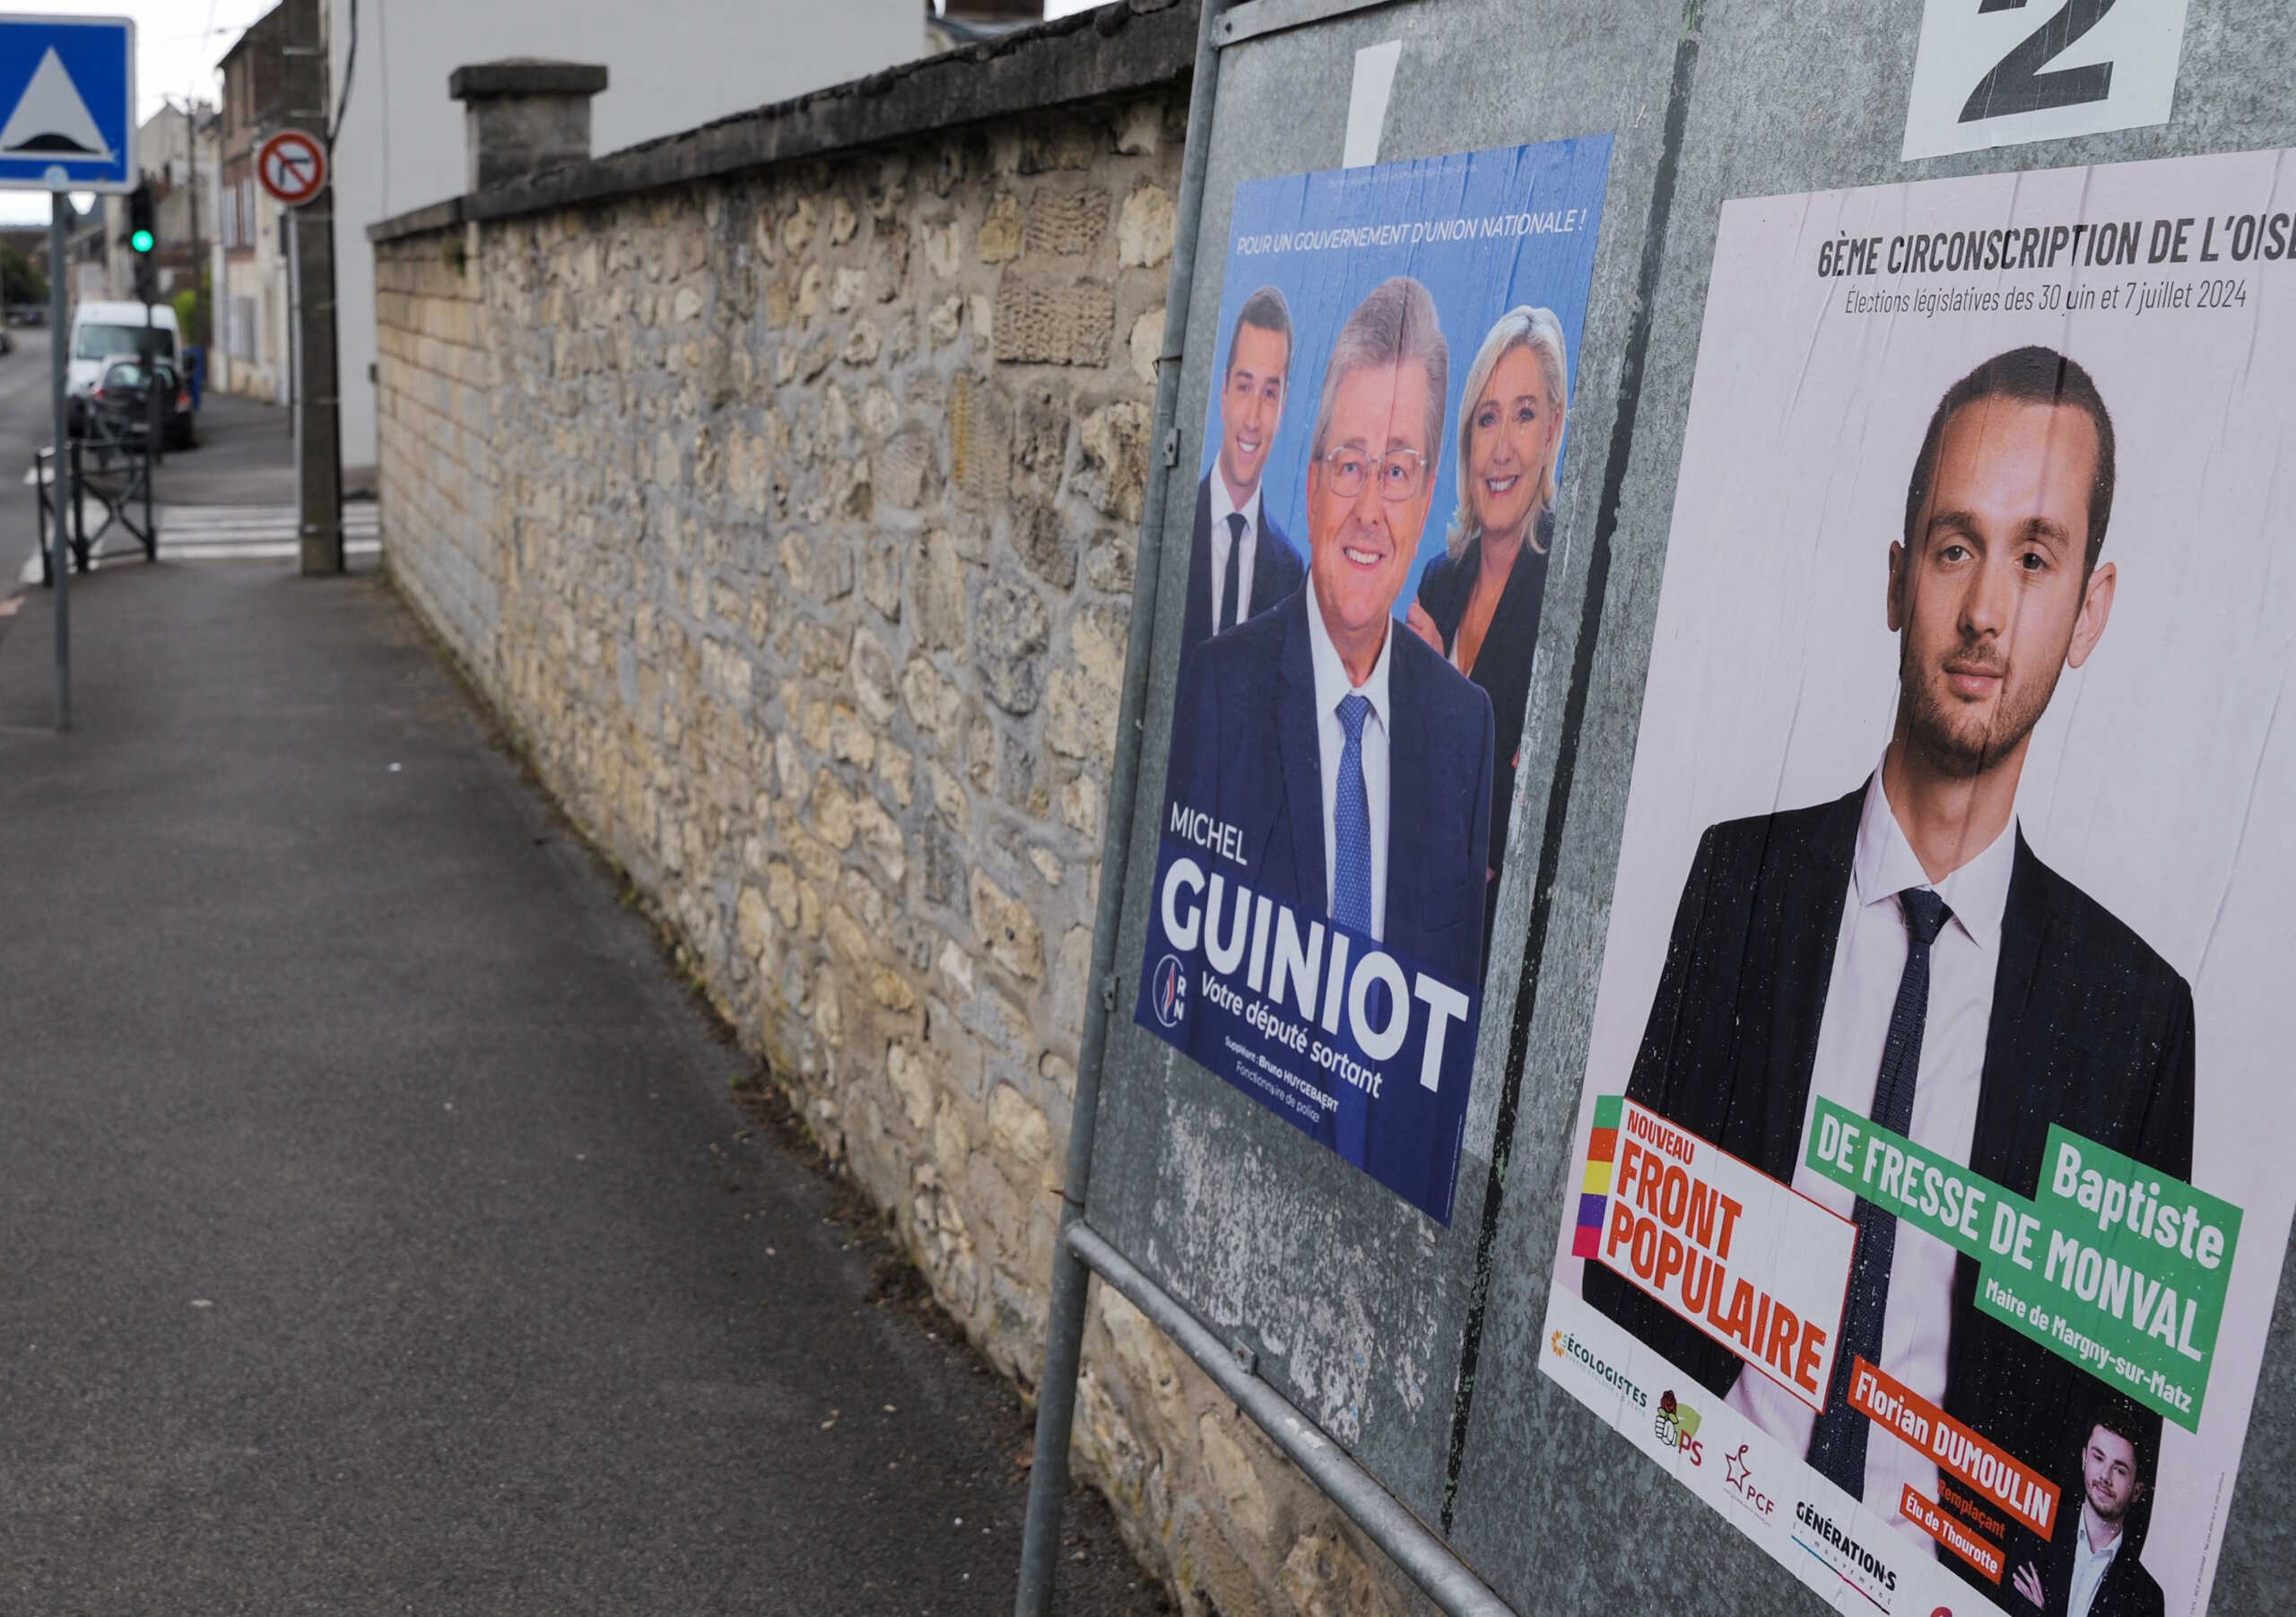 Εκλογές στη Γαλλία: Στις κάλπες για το β’ γύρο – Δύσκολη η αυτοδυναμία για την ακροδεξιά της Λε Πεν